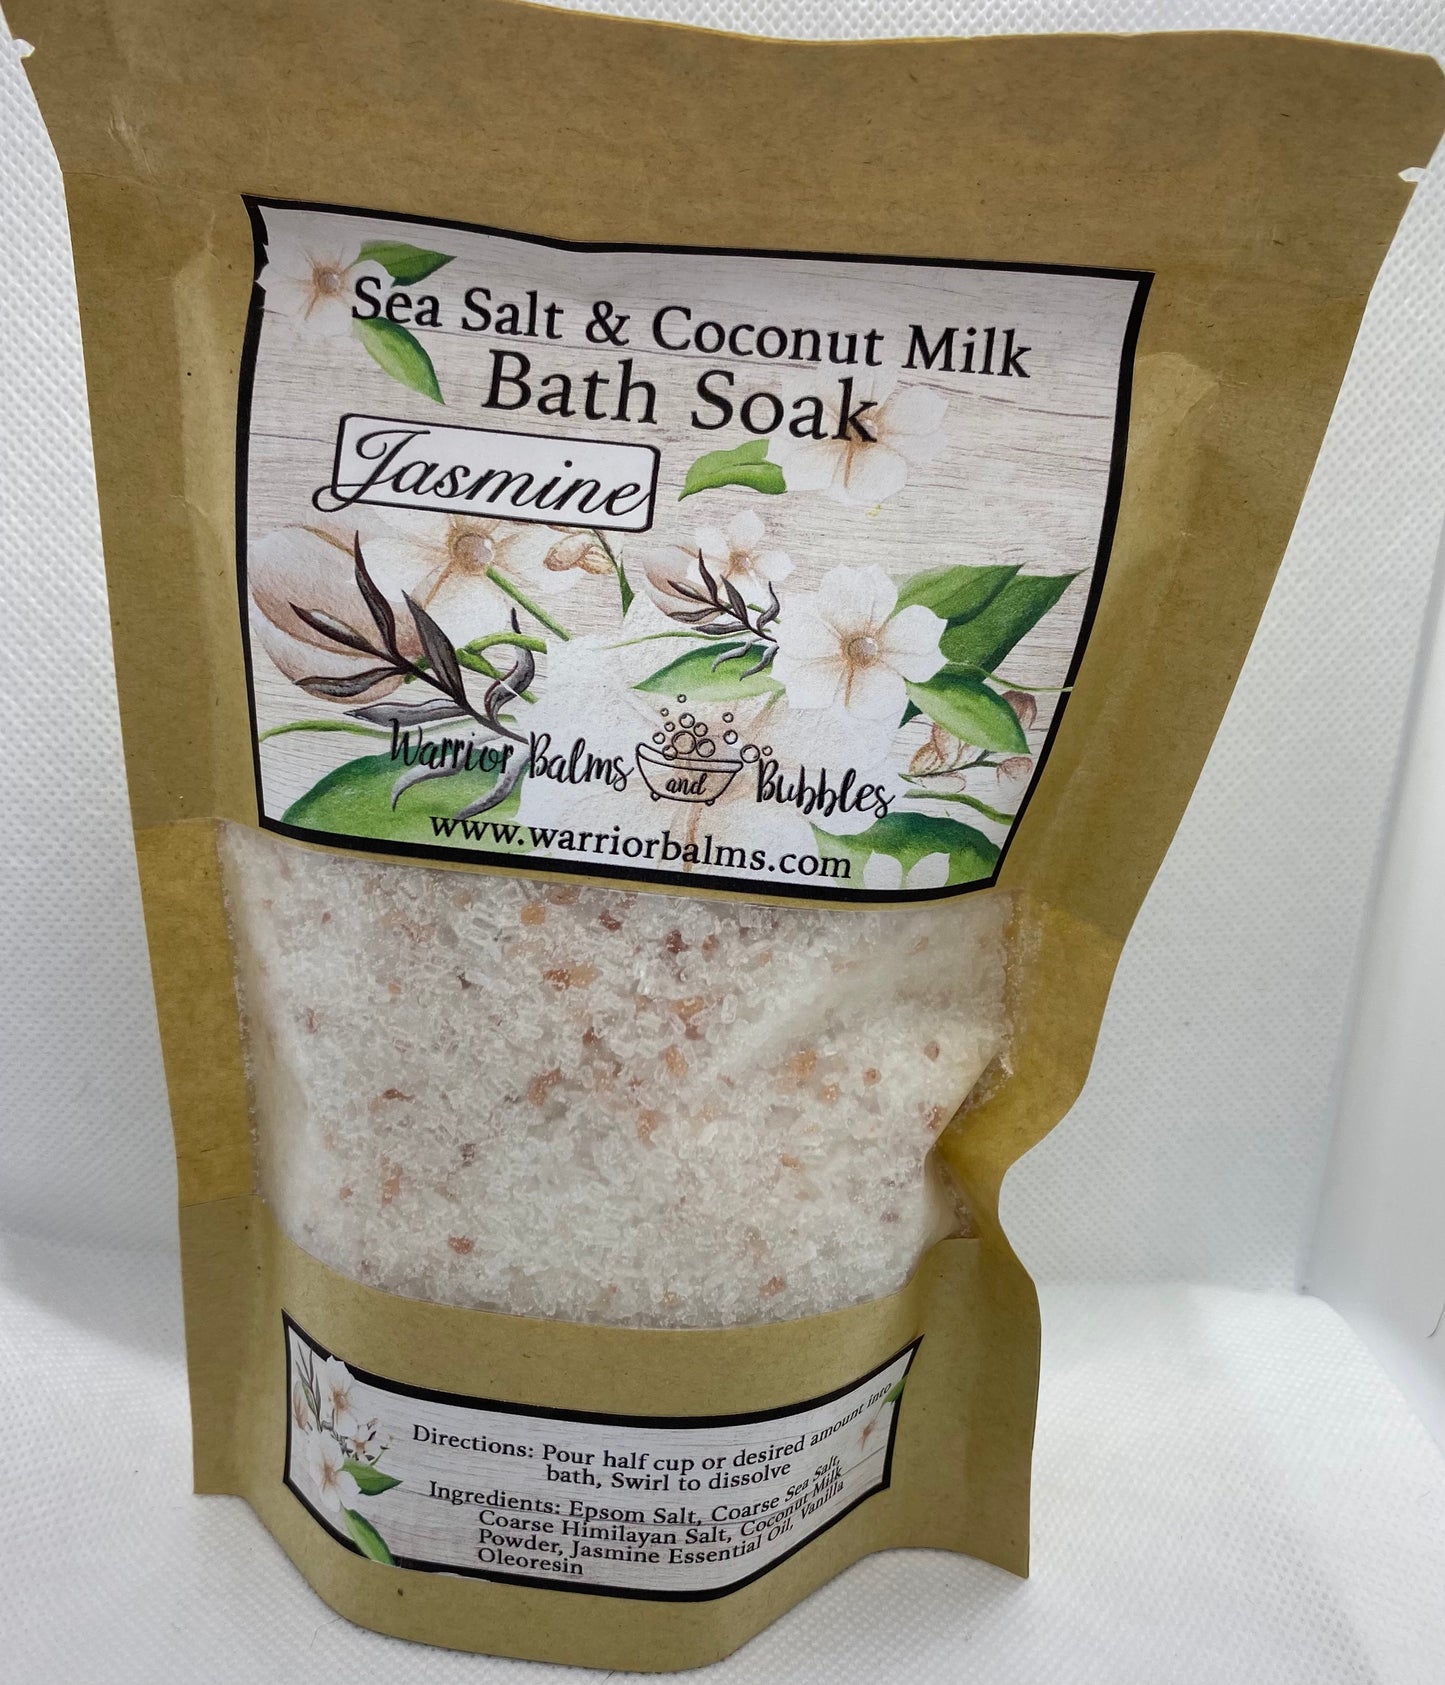 Salt & Coconut Milk Bath Soak Jasmine